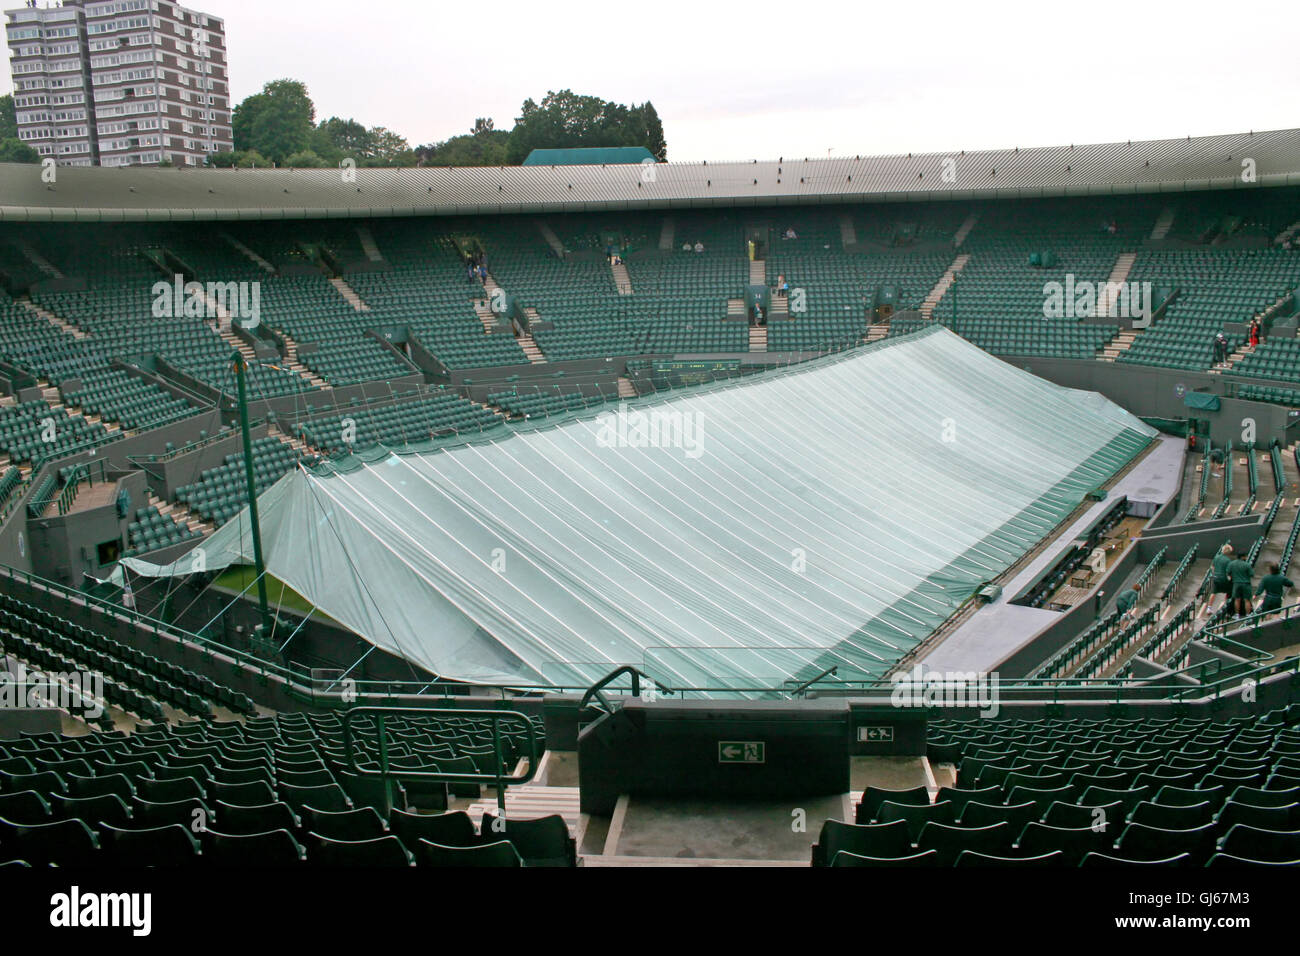 Un court de tennis couvert en raison du mauvais temps Banque D'Images